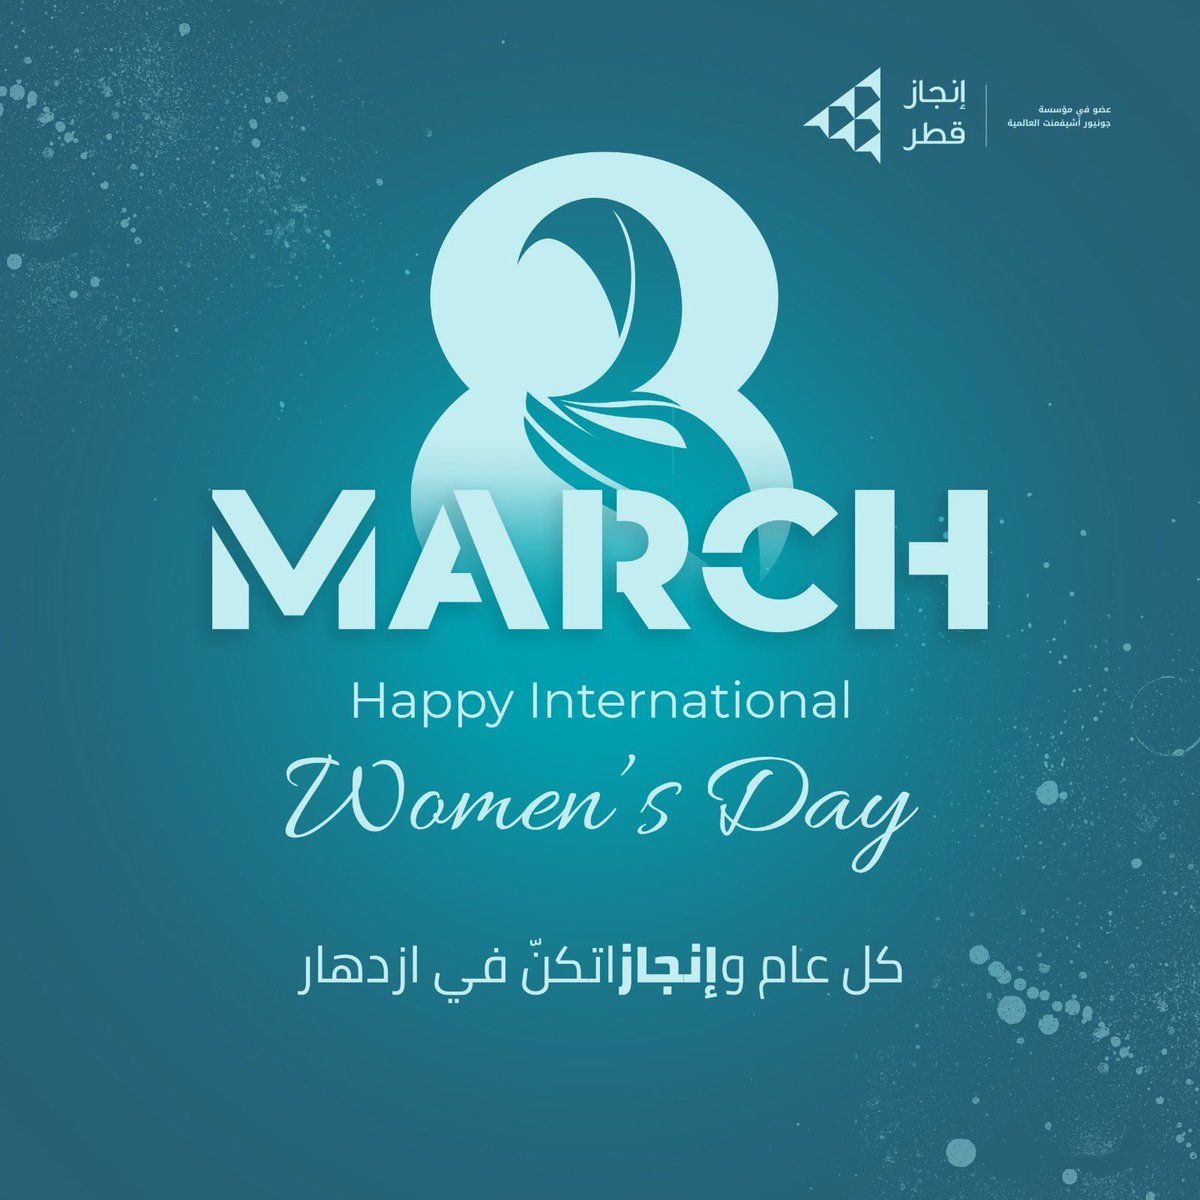 يوم المرأة العالمي 8 مارس 
كل عام وأنتنًّ منجزات لأهدافكن

8 Mar Happy international women’s day

#happyintetnationalwomensday #injazqatar #injazalarab #juniorachievement